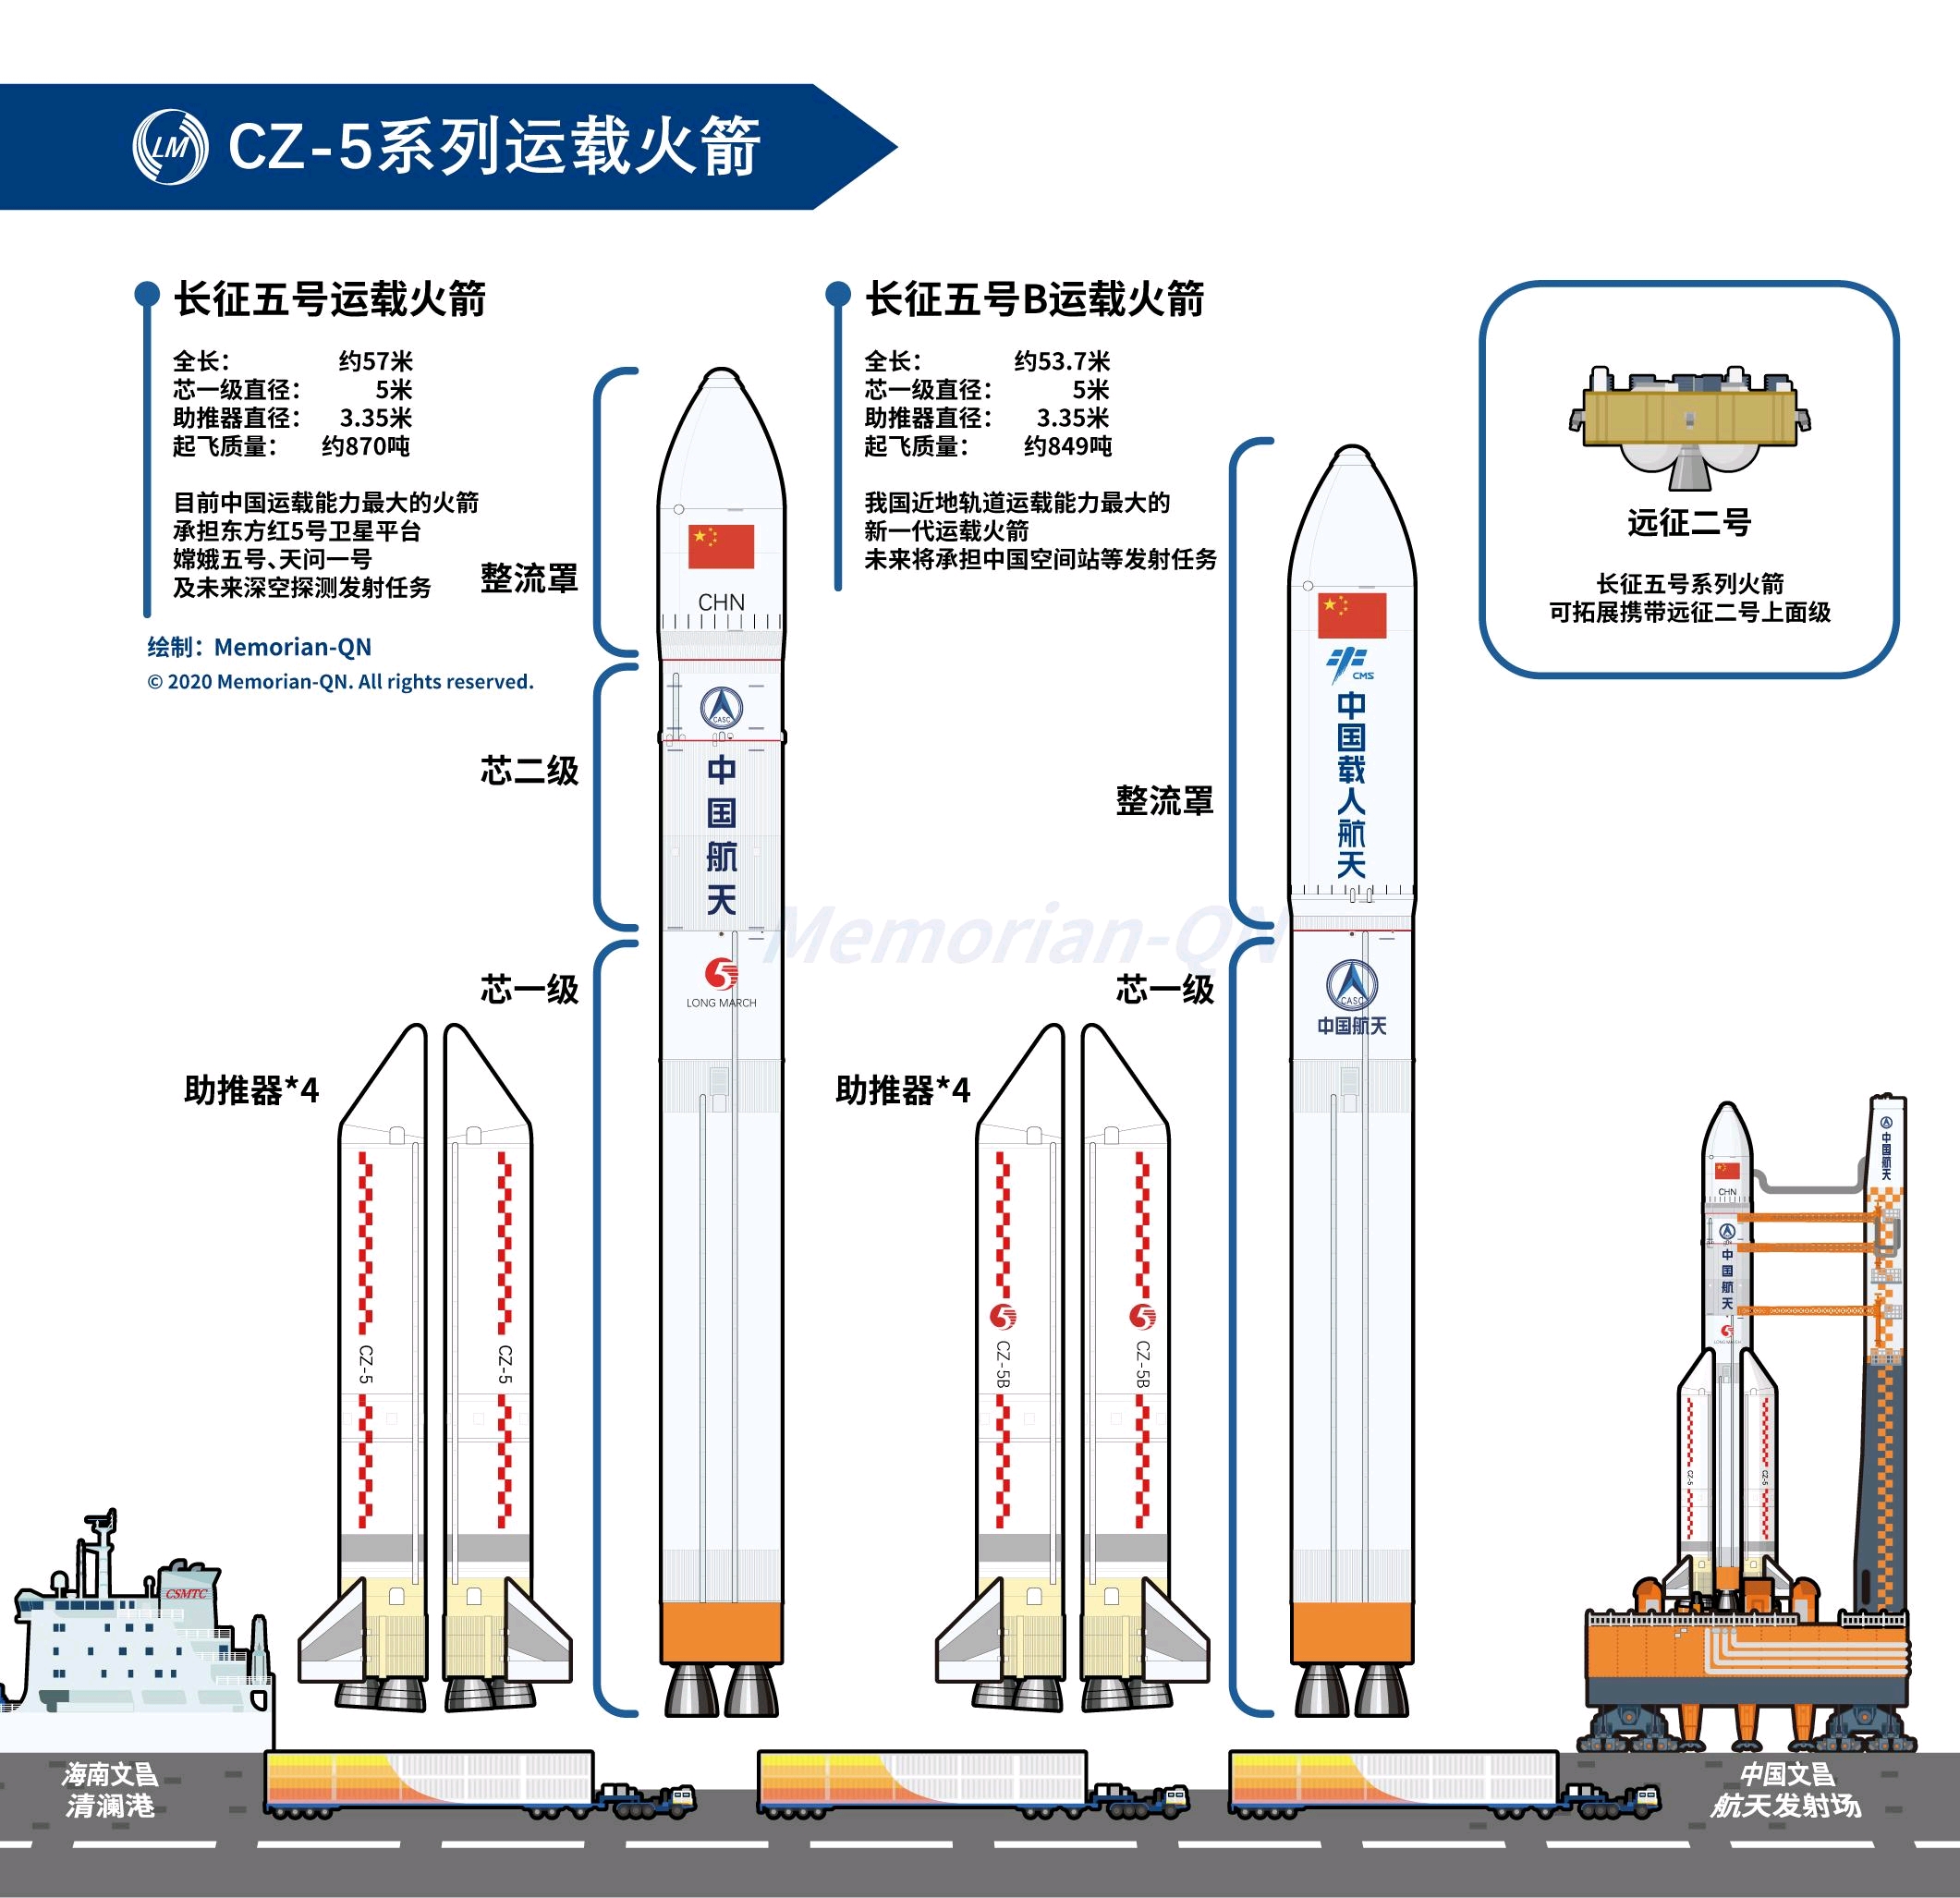 长征五号遥二运载火箭将于4月底发射中国空间站天和核心仓